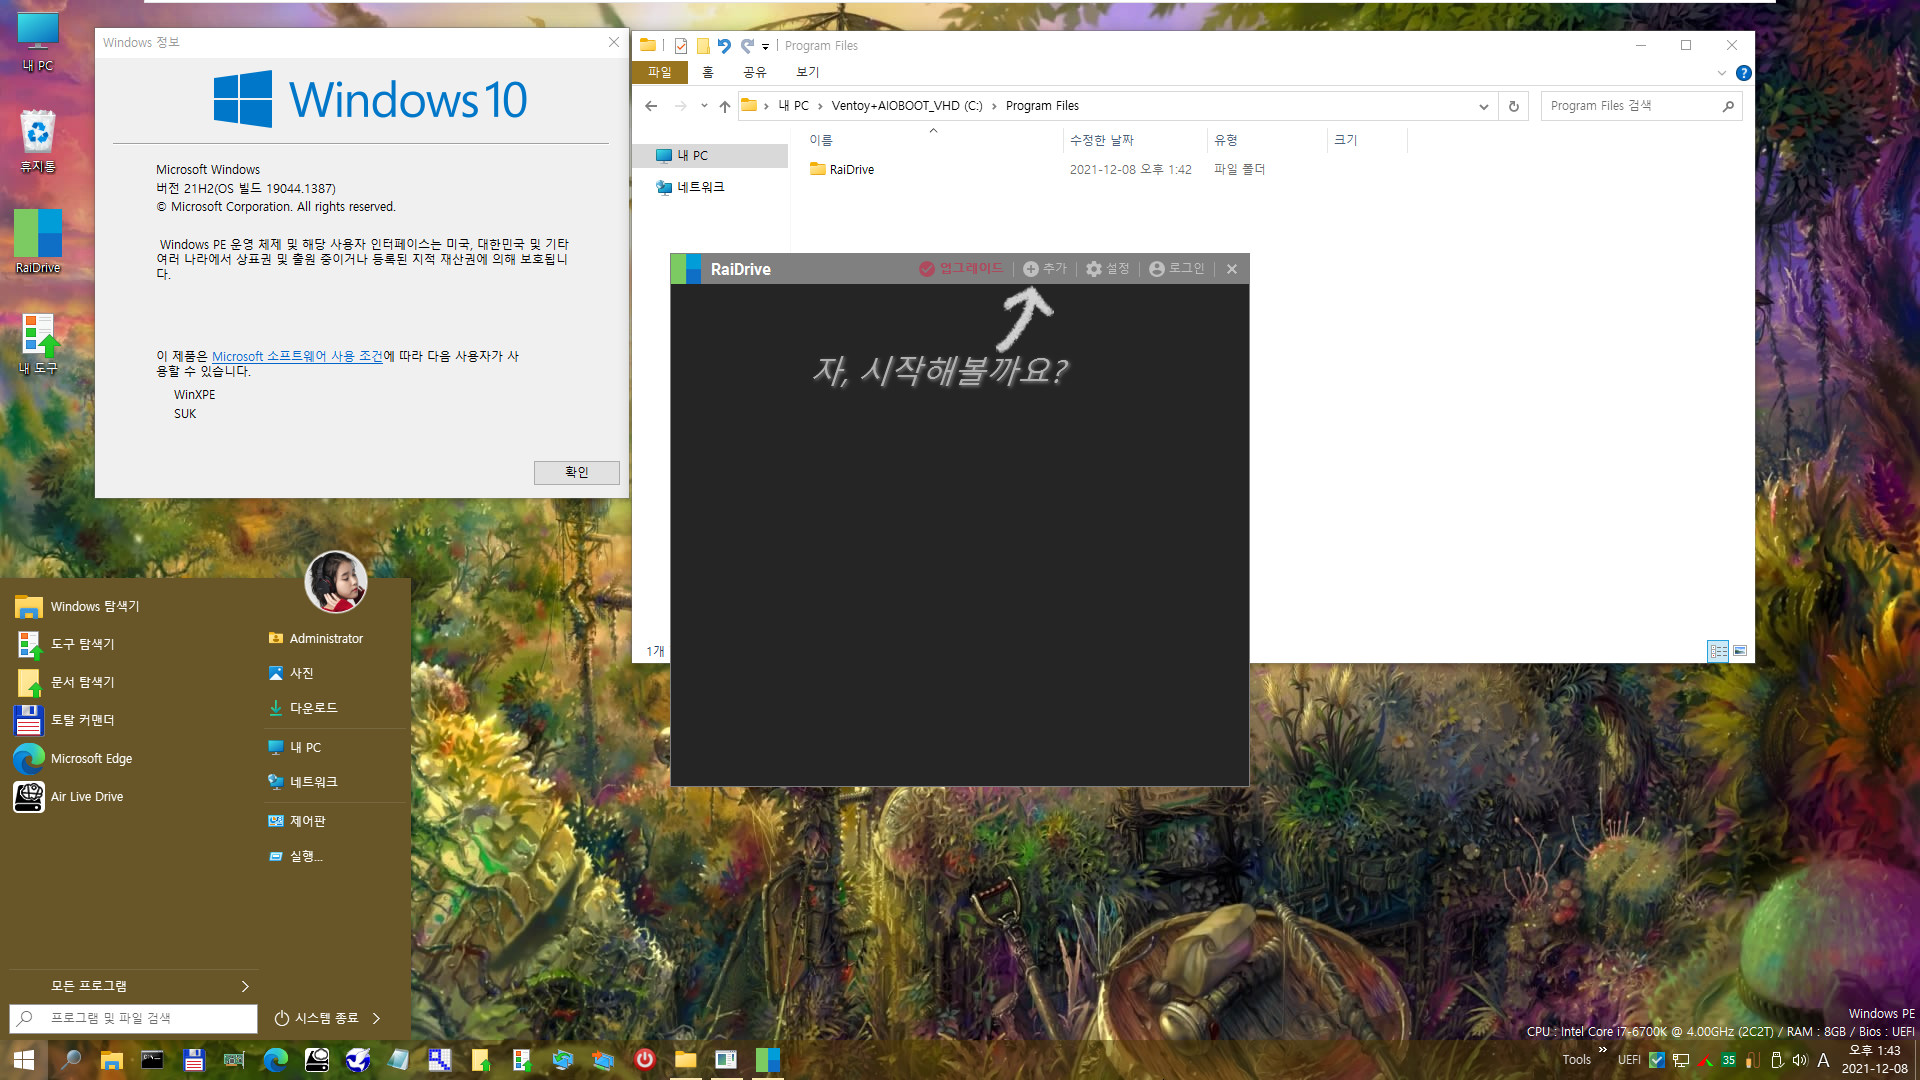 PE에서 RaiDrive 첫 설치 테스트 - WindowsXPE132 으로 Windows 10 (19044.1387) 통합본으로 PE 만들어서 테스트 - 여러번 시도하여 성공함 2021-12-08_134305.jpg